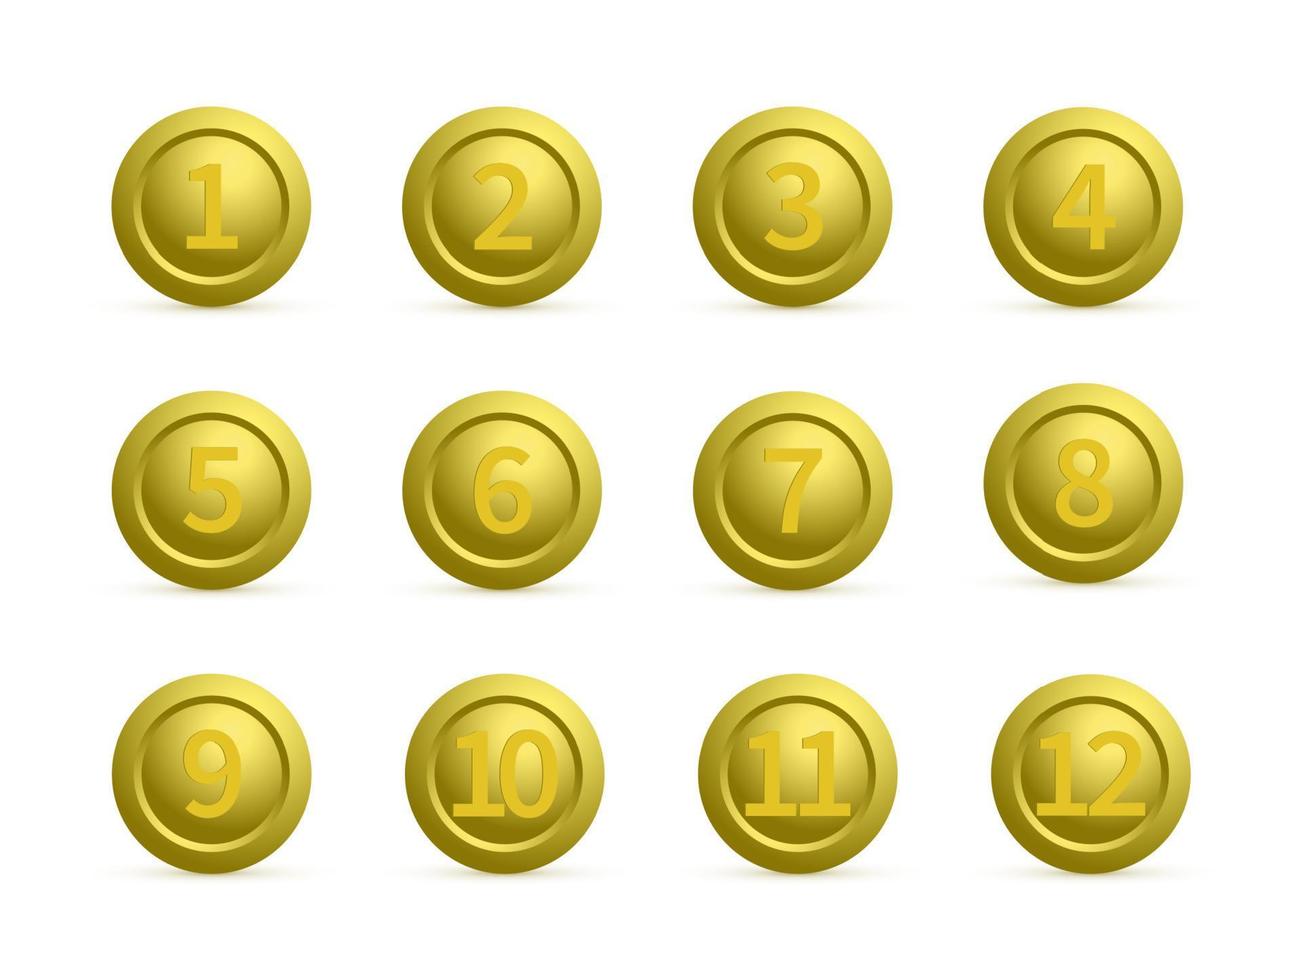 conjunto de botões redondos dourados com números de 1 a 12 com sombras. botões dourados isolados no branco. ícones do vetor de emblemas numerados. Chaves 3D para sites e aplicativos móveis. modelo fácil de editar.